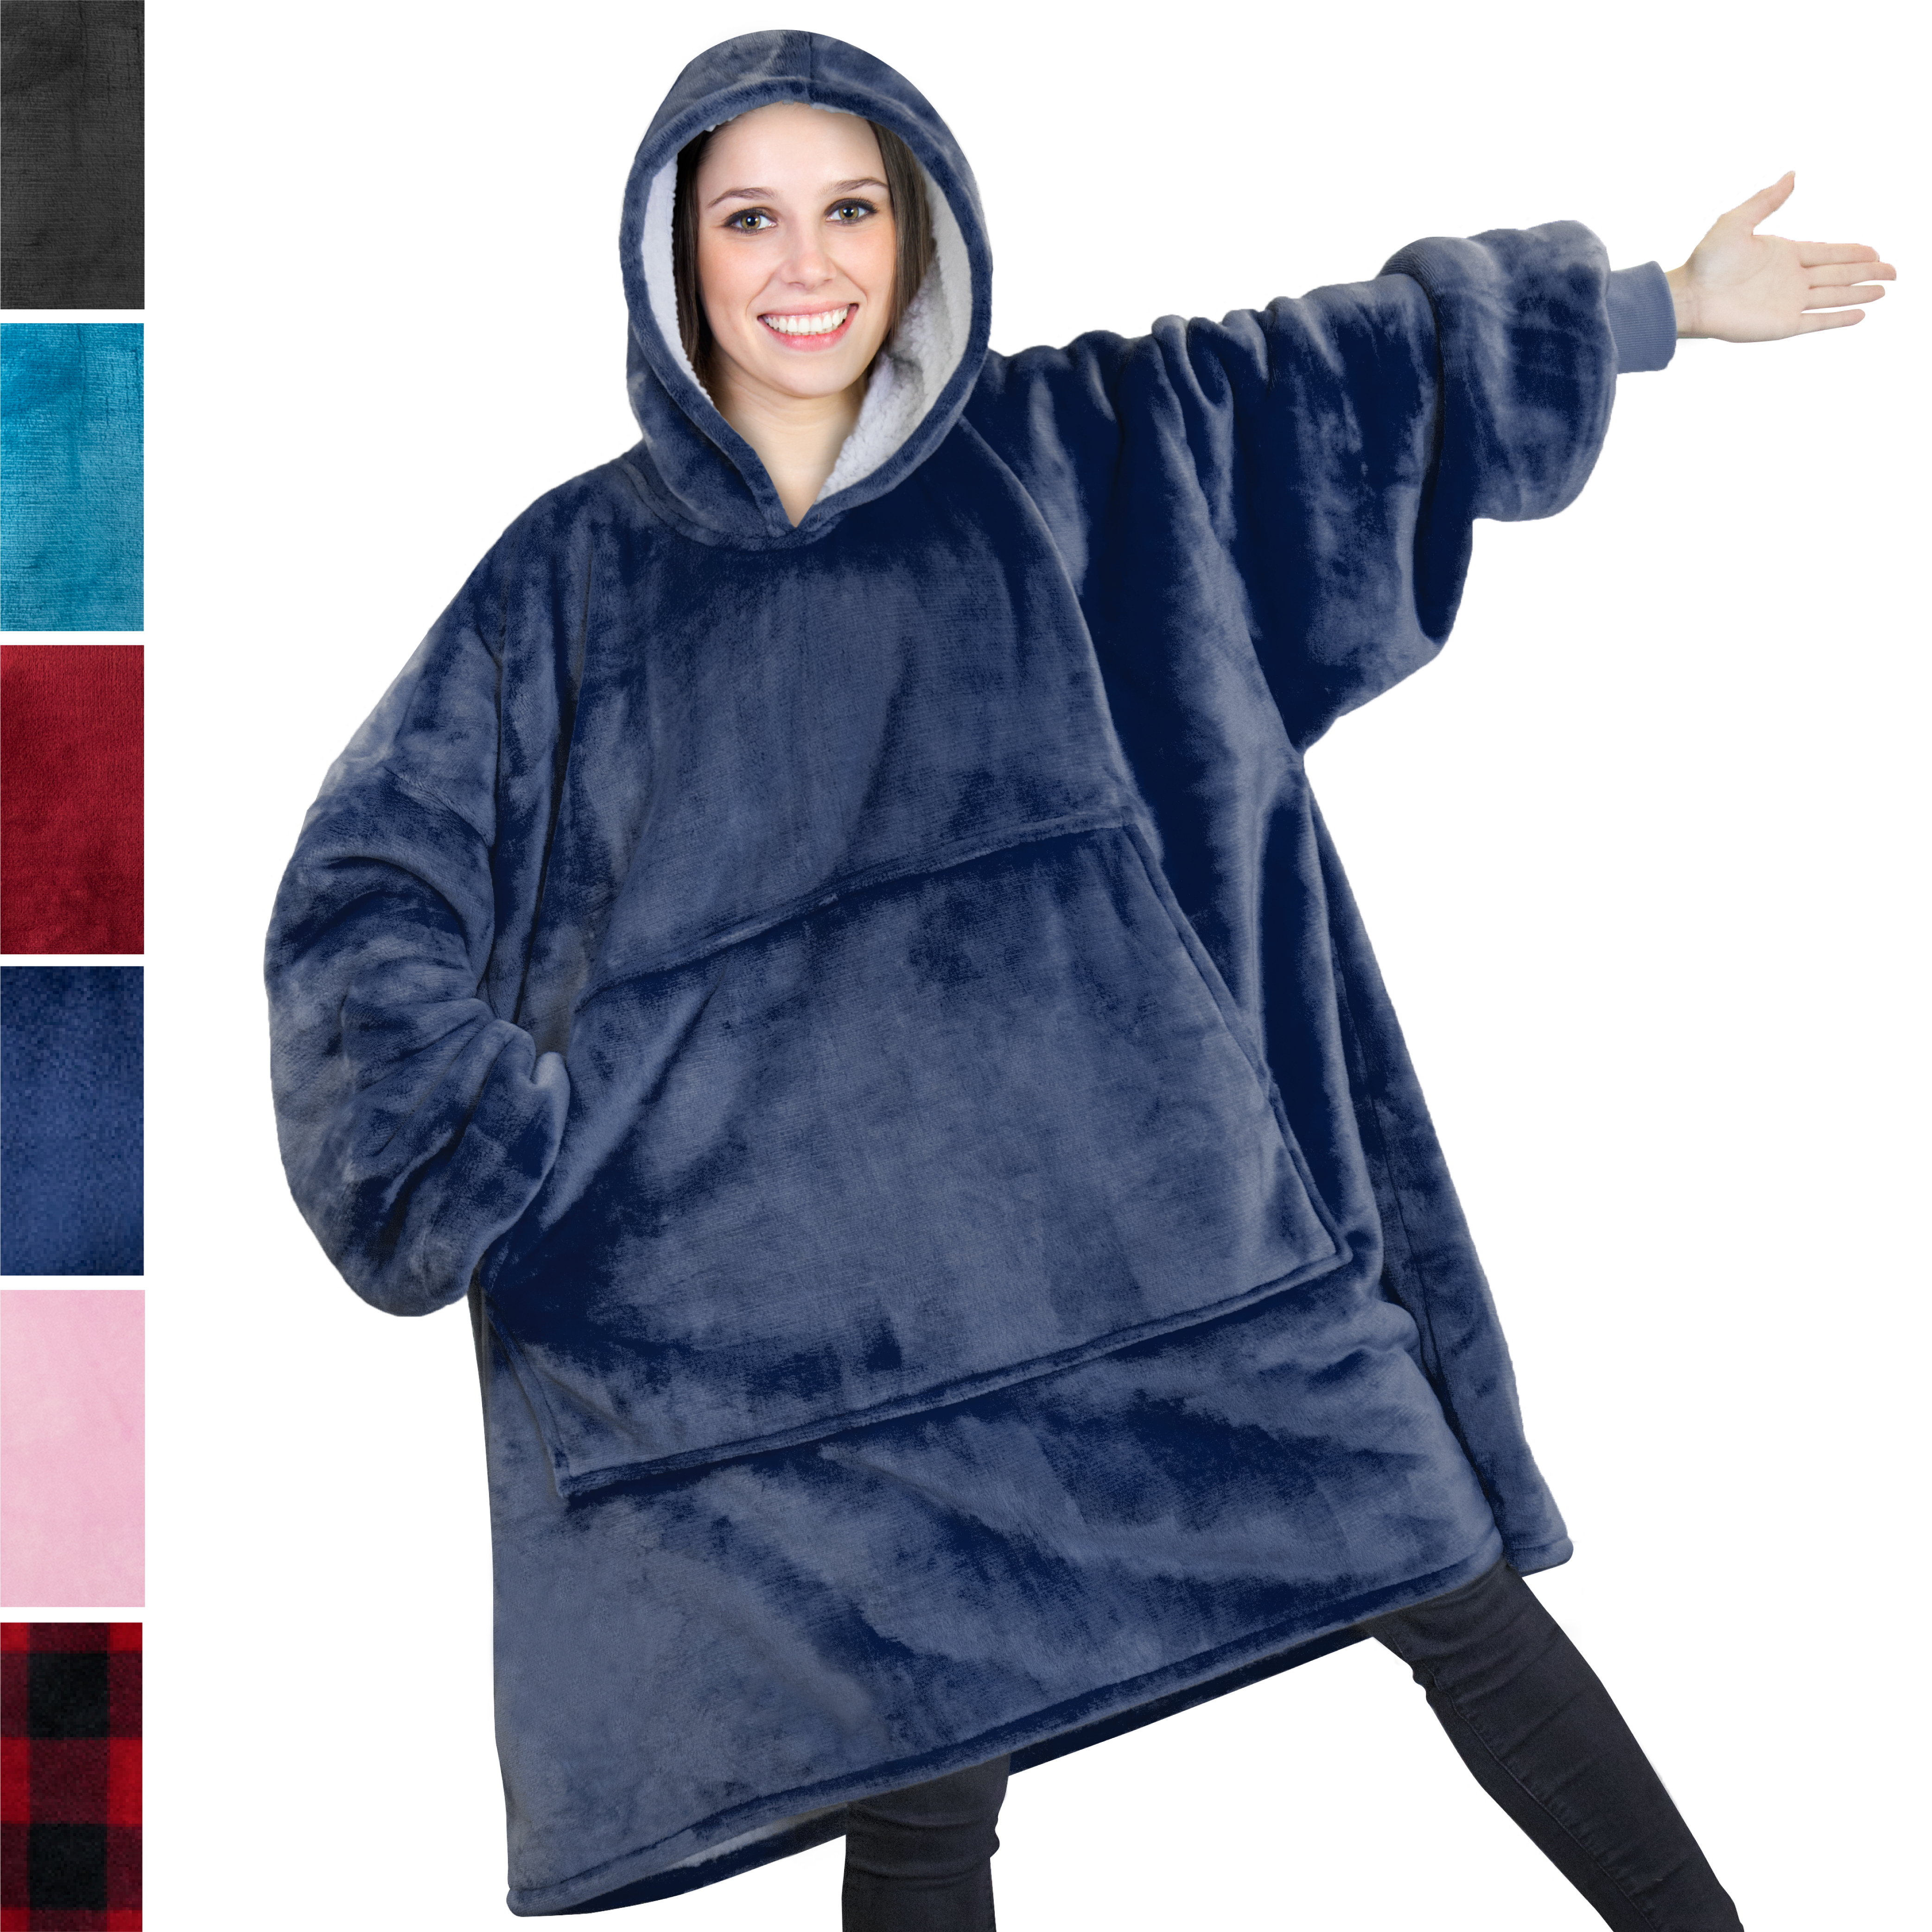 Comfy HOODIE SWEATSHIRT Wearable Blanket With Hood Sleeves Large